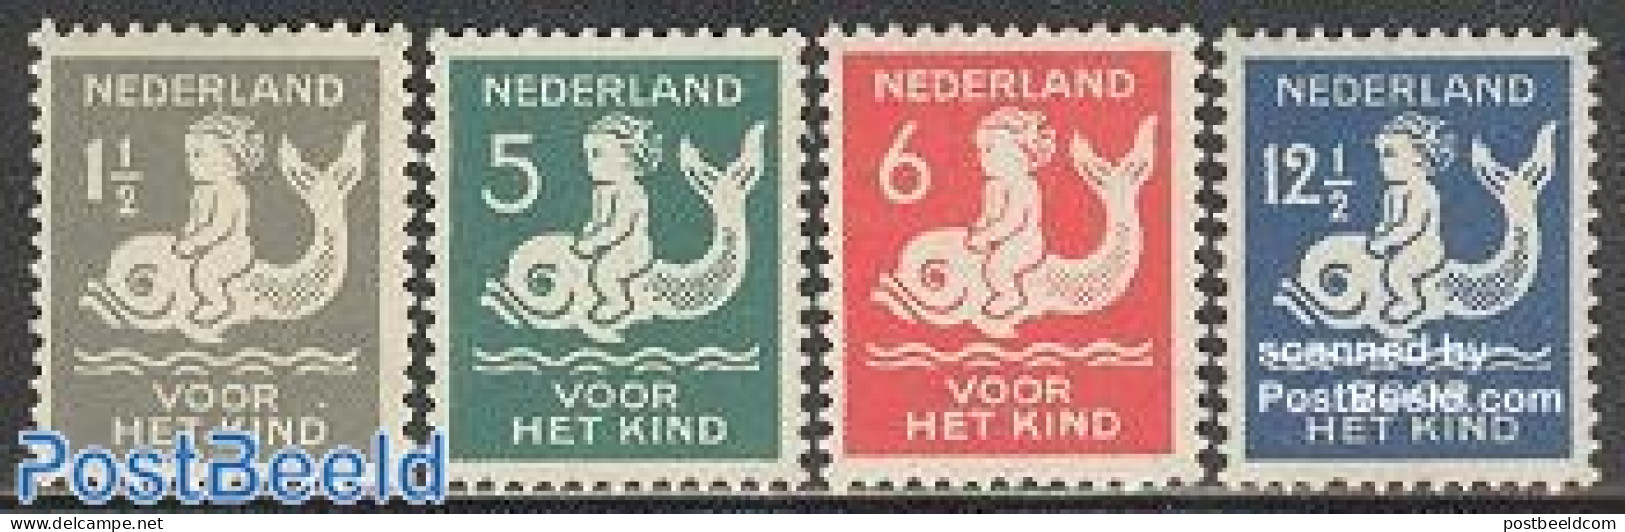 Netherlands 1929 Child Welfare 4v, Unused (hinged), Nature - Fish - Sea Mammals - Unused Stamps